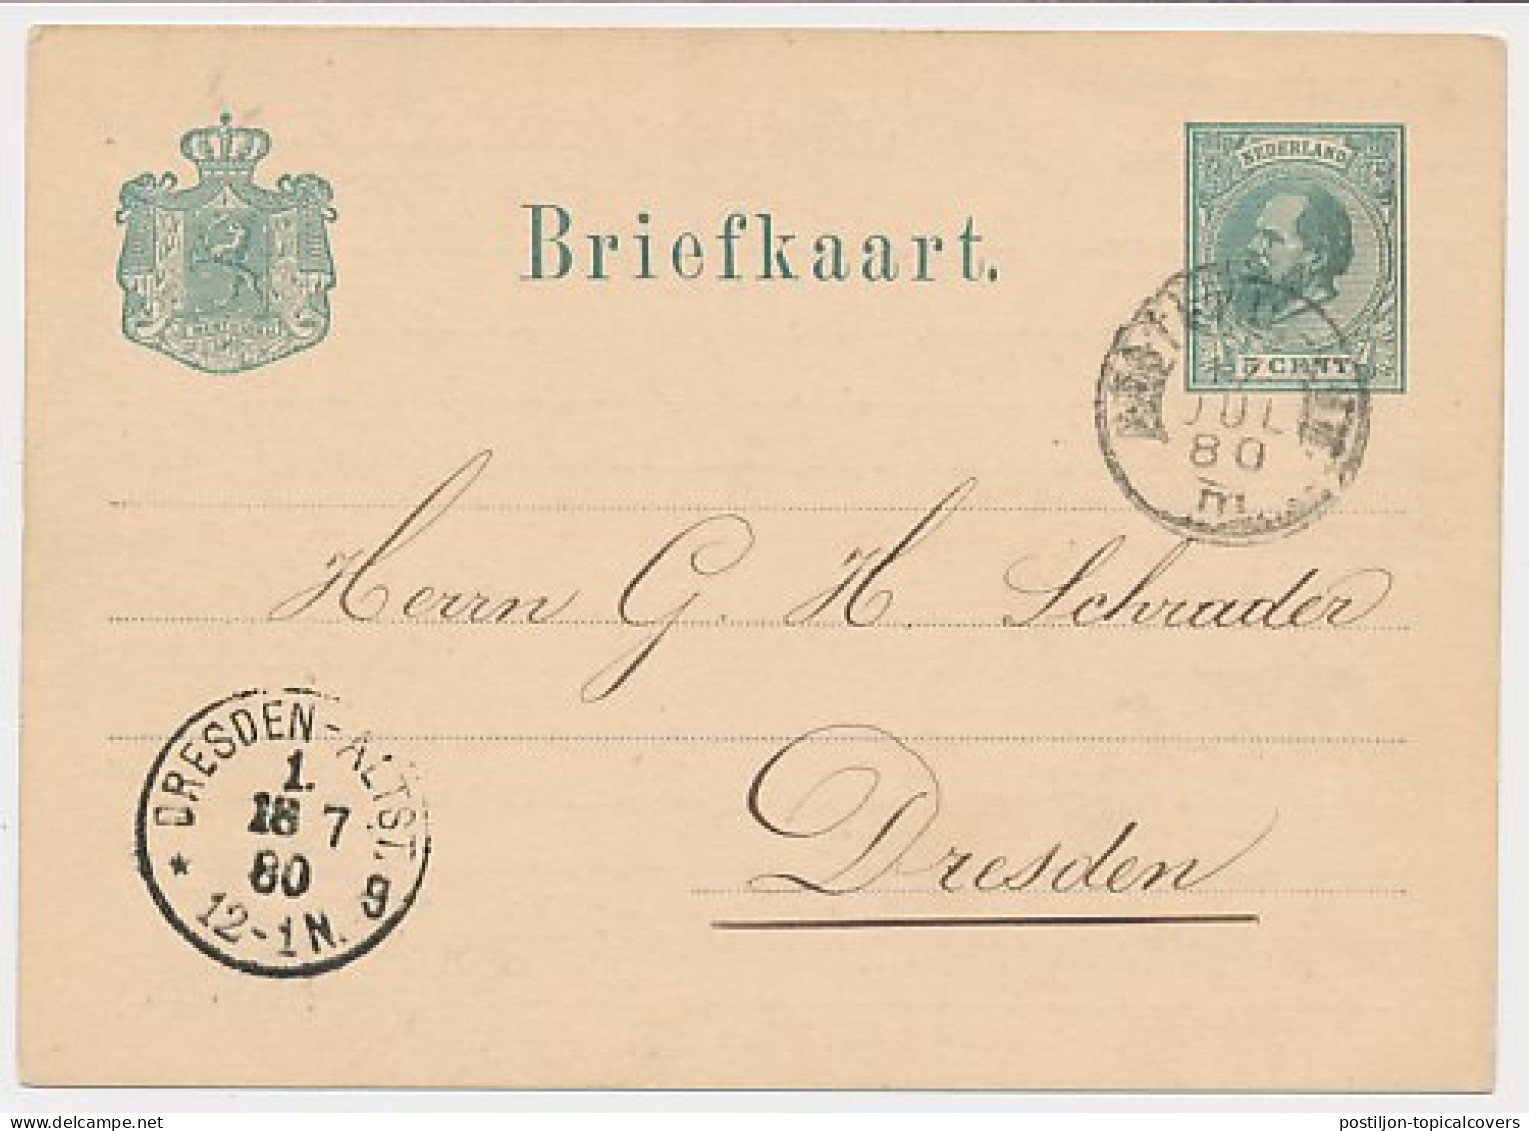 Briefkaart G. 16 Particulier Bedrukt Amsterdam - Duitsland 1880 - Material Postal